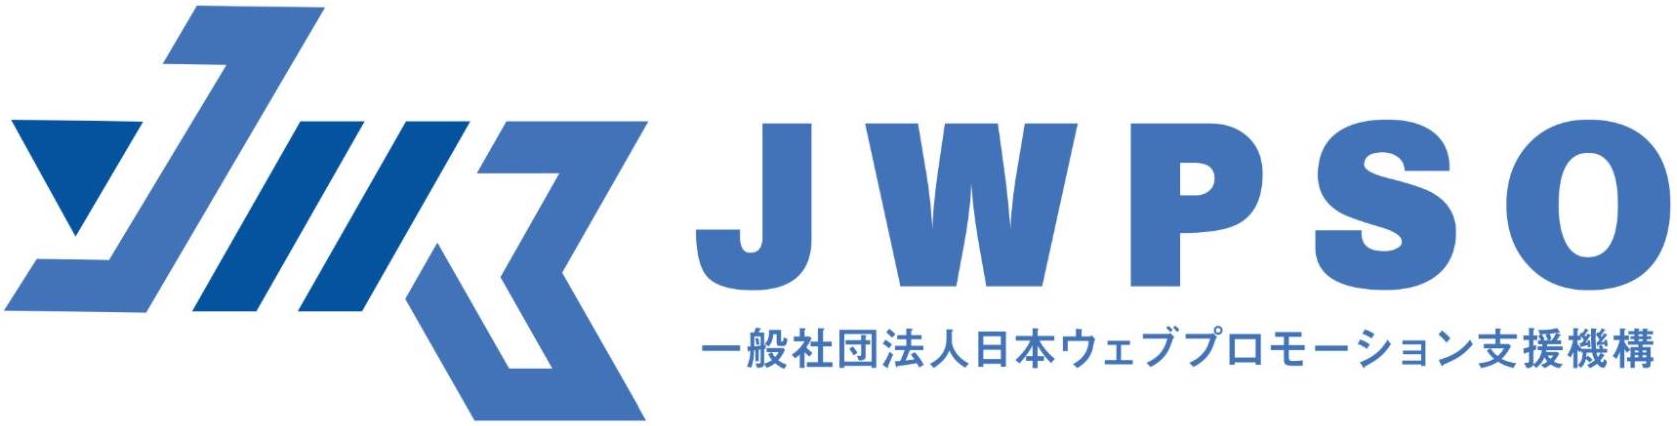 一般社団法人 日本ウェブプロモーション支援機構